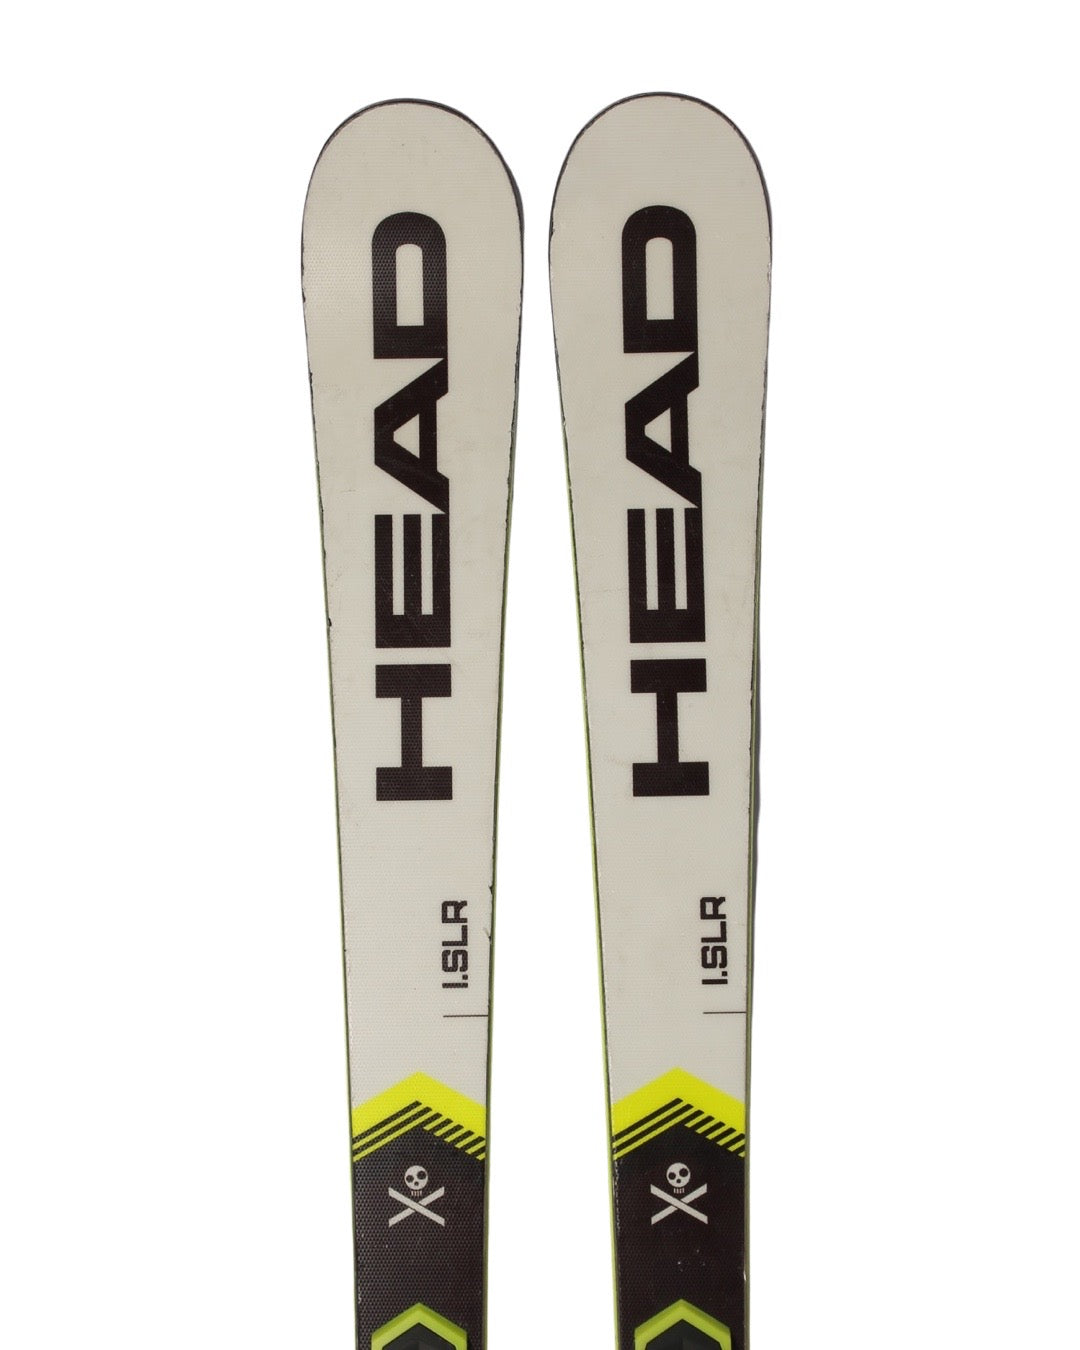 Ski - Head Worldcup Rebels i.SLR - 2299 kr